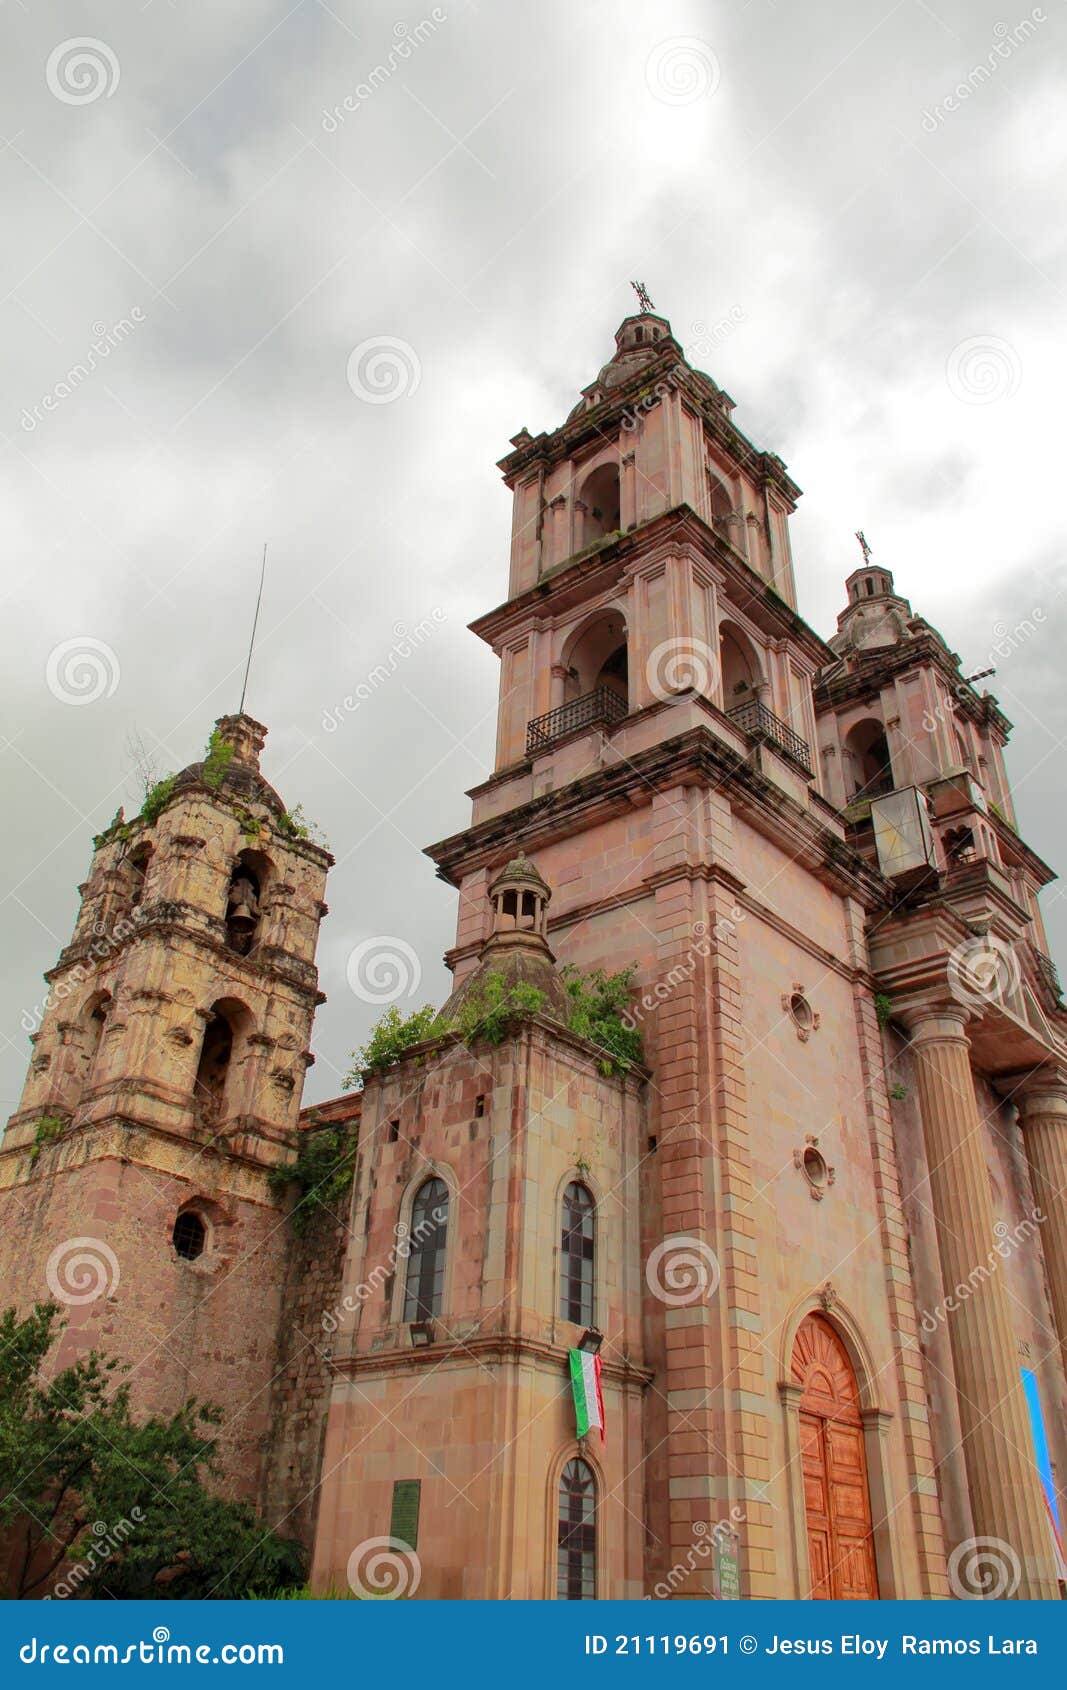 valle de bravo church, mexico iii